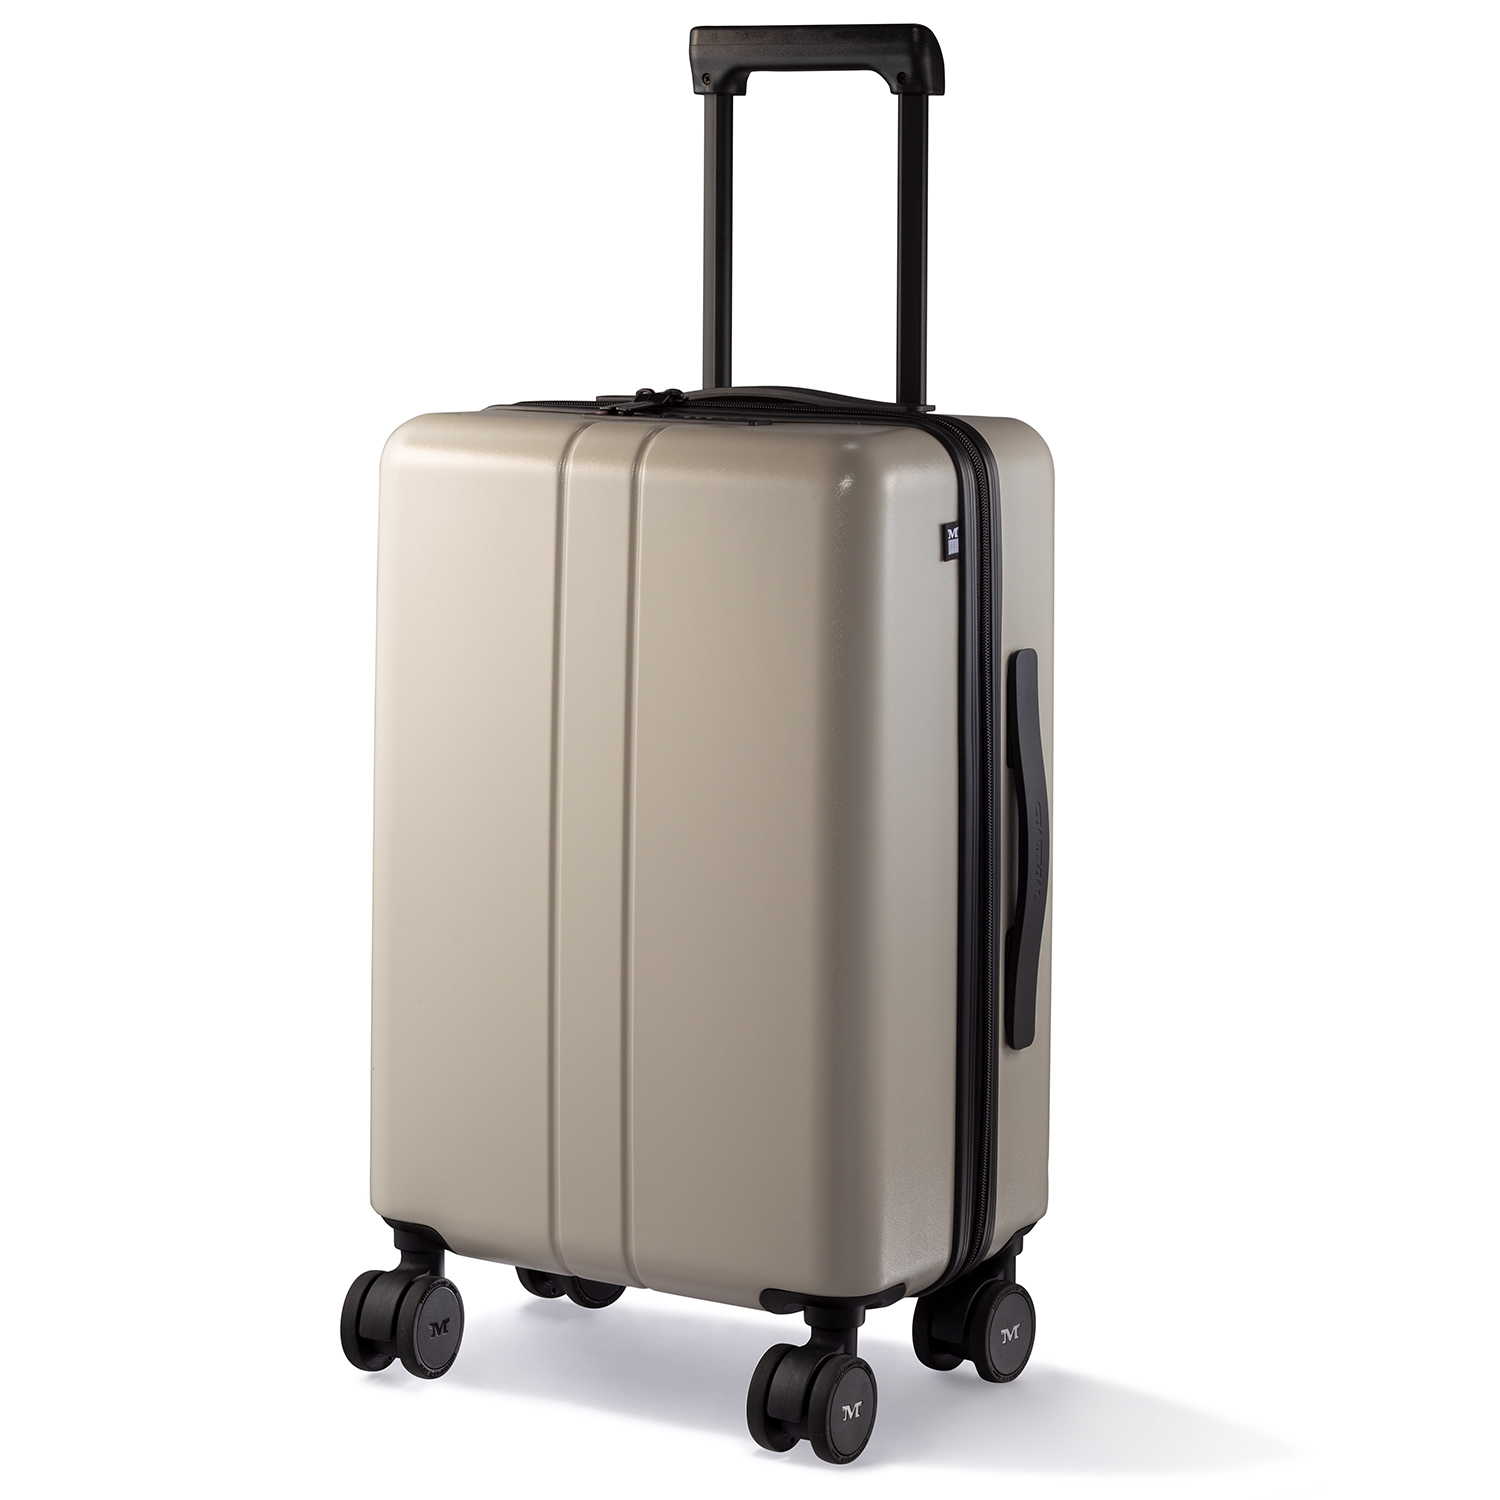 スーツケース キャリーケース MAIMO公式 キャリーバッグ Sサイズ 機内